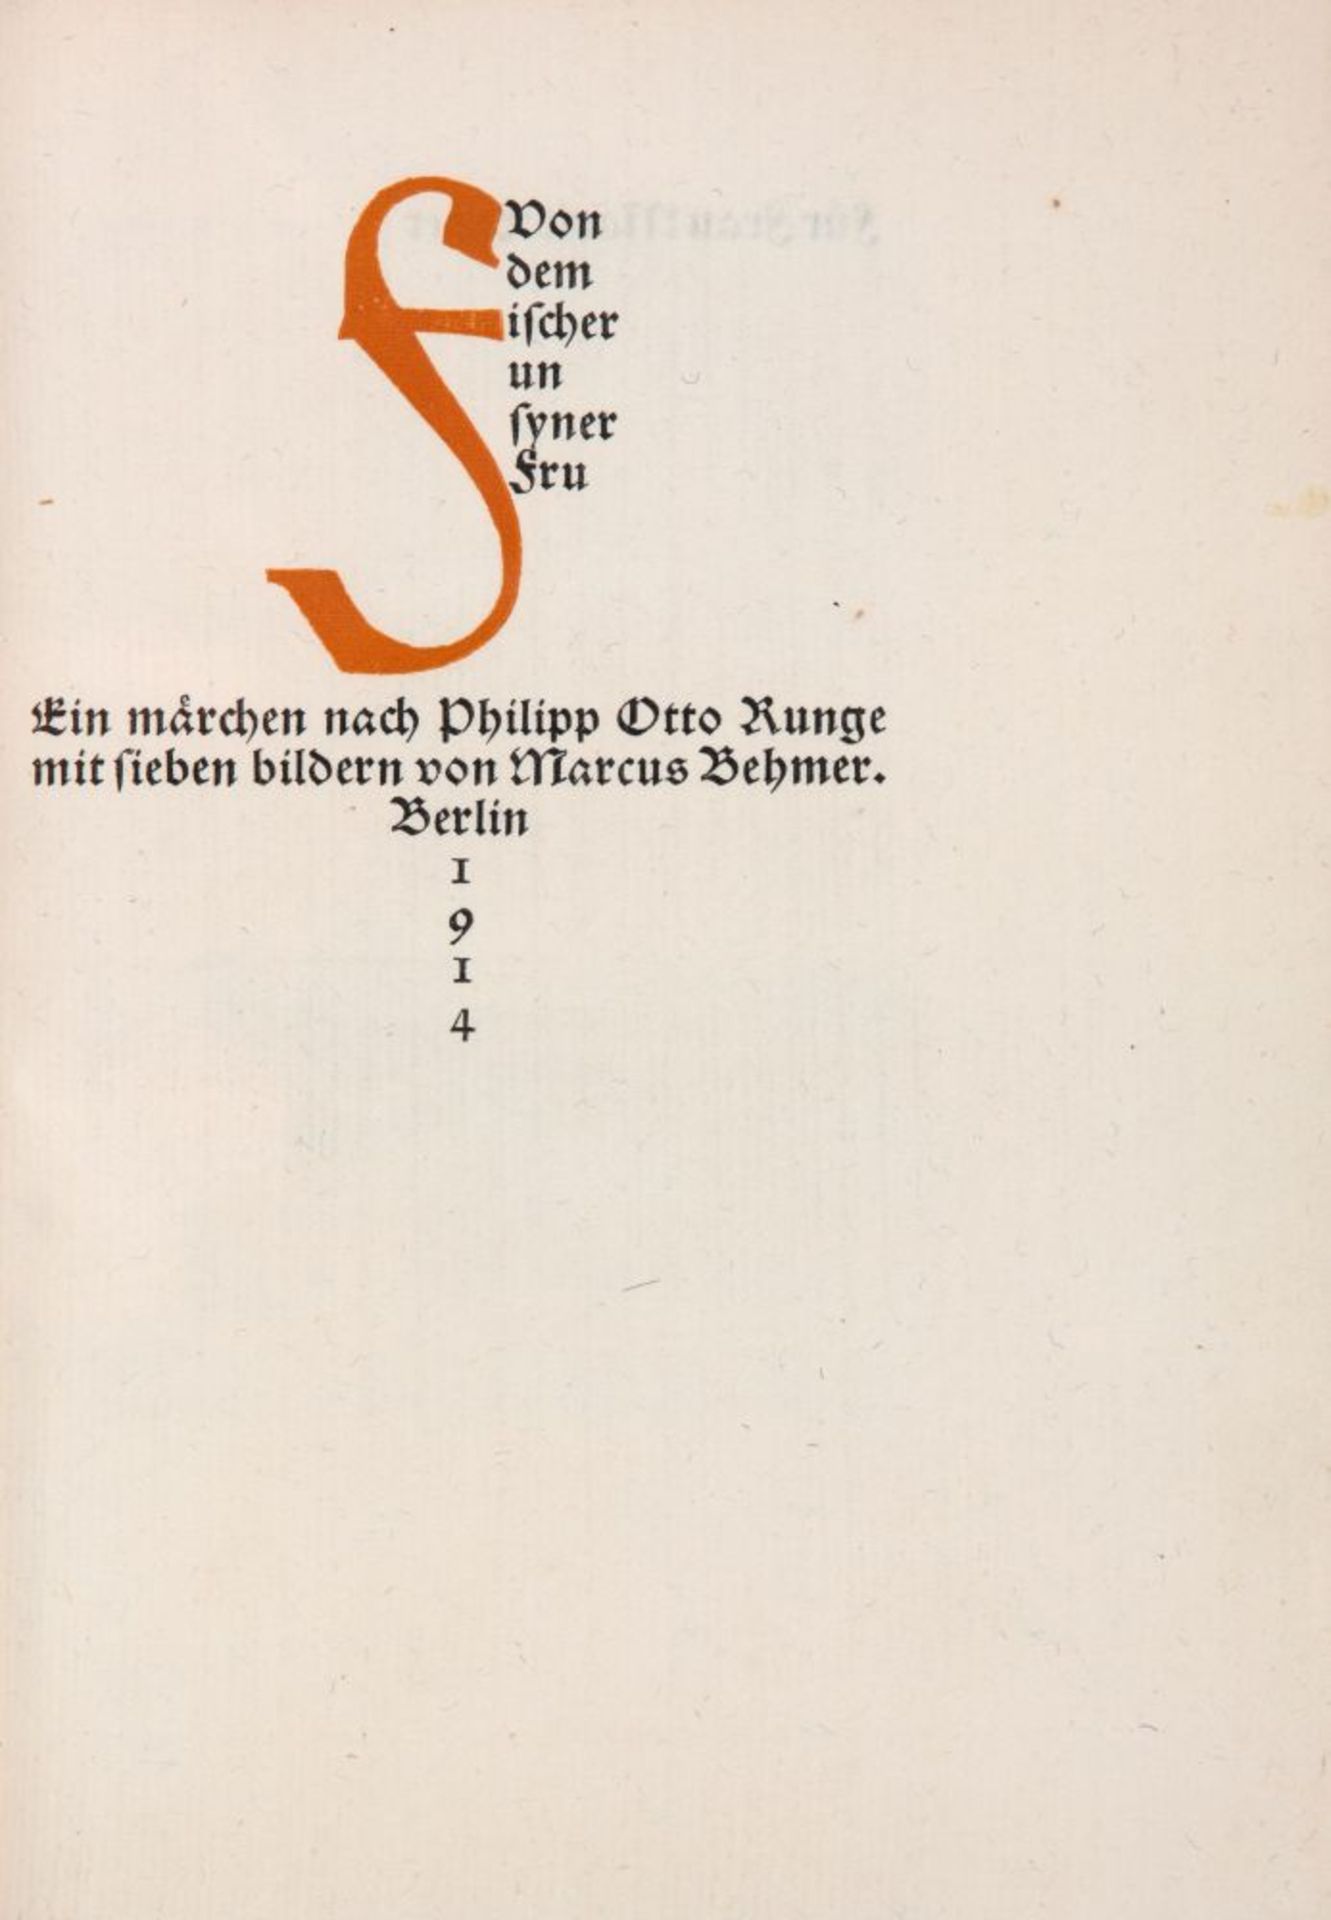 P. O. Runge / M. Behmer, Von dem Fischer un syner Fru. Bln 1914. - Ex. 159/180. - Bild 2 aus 2